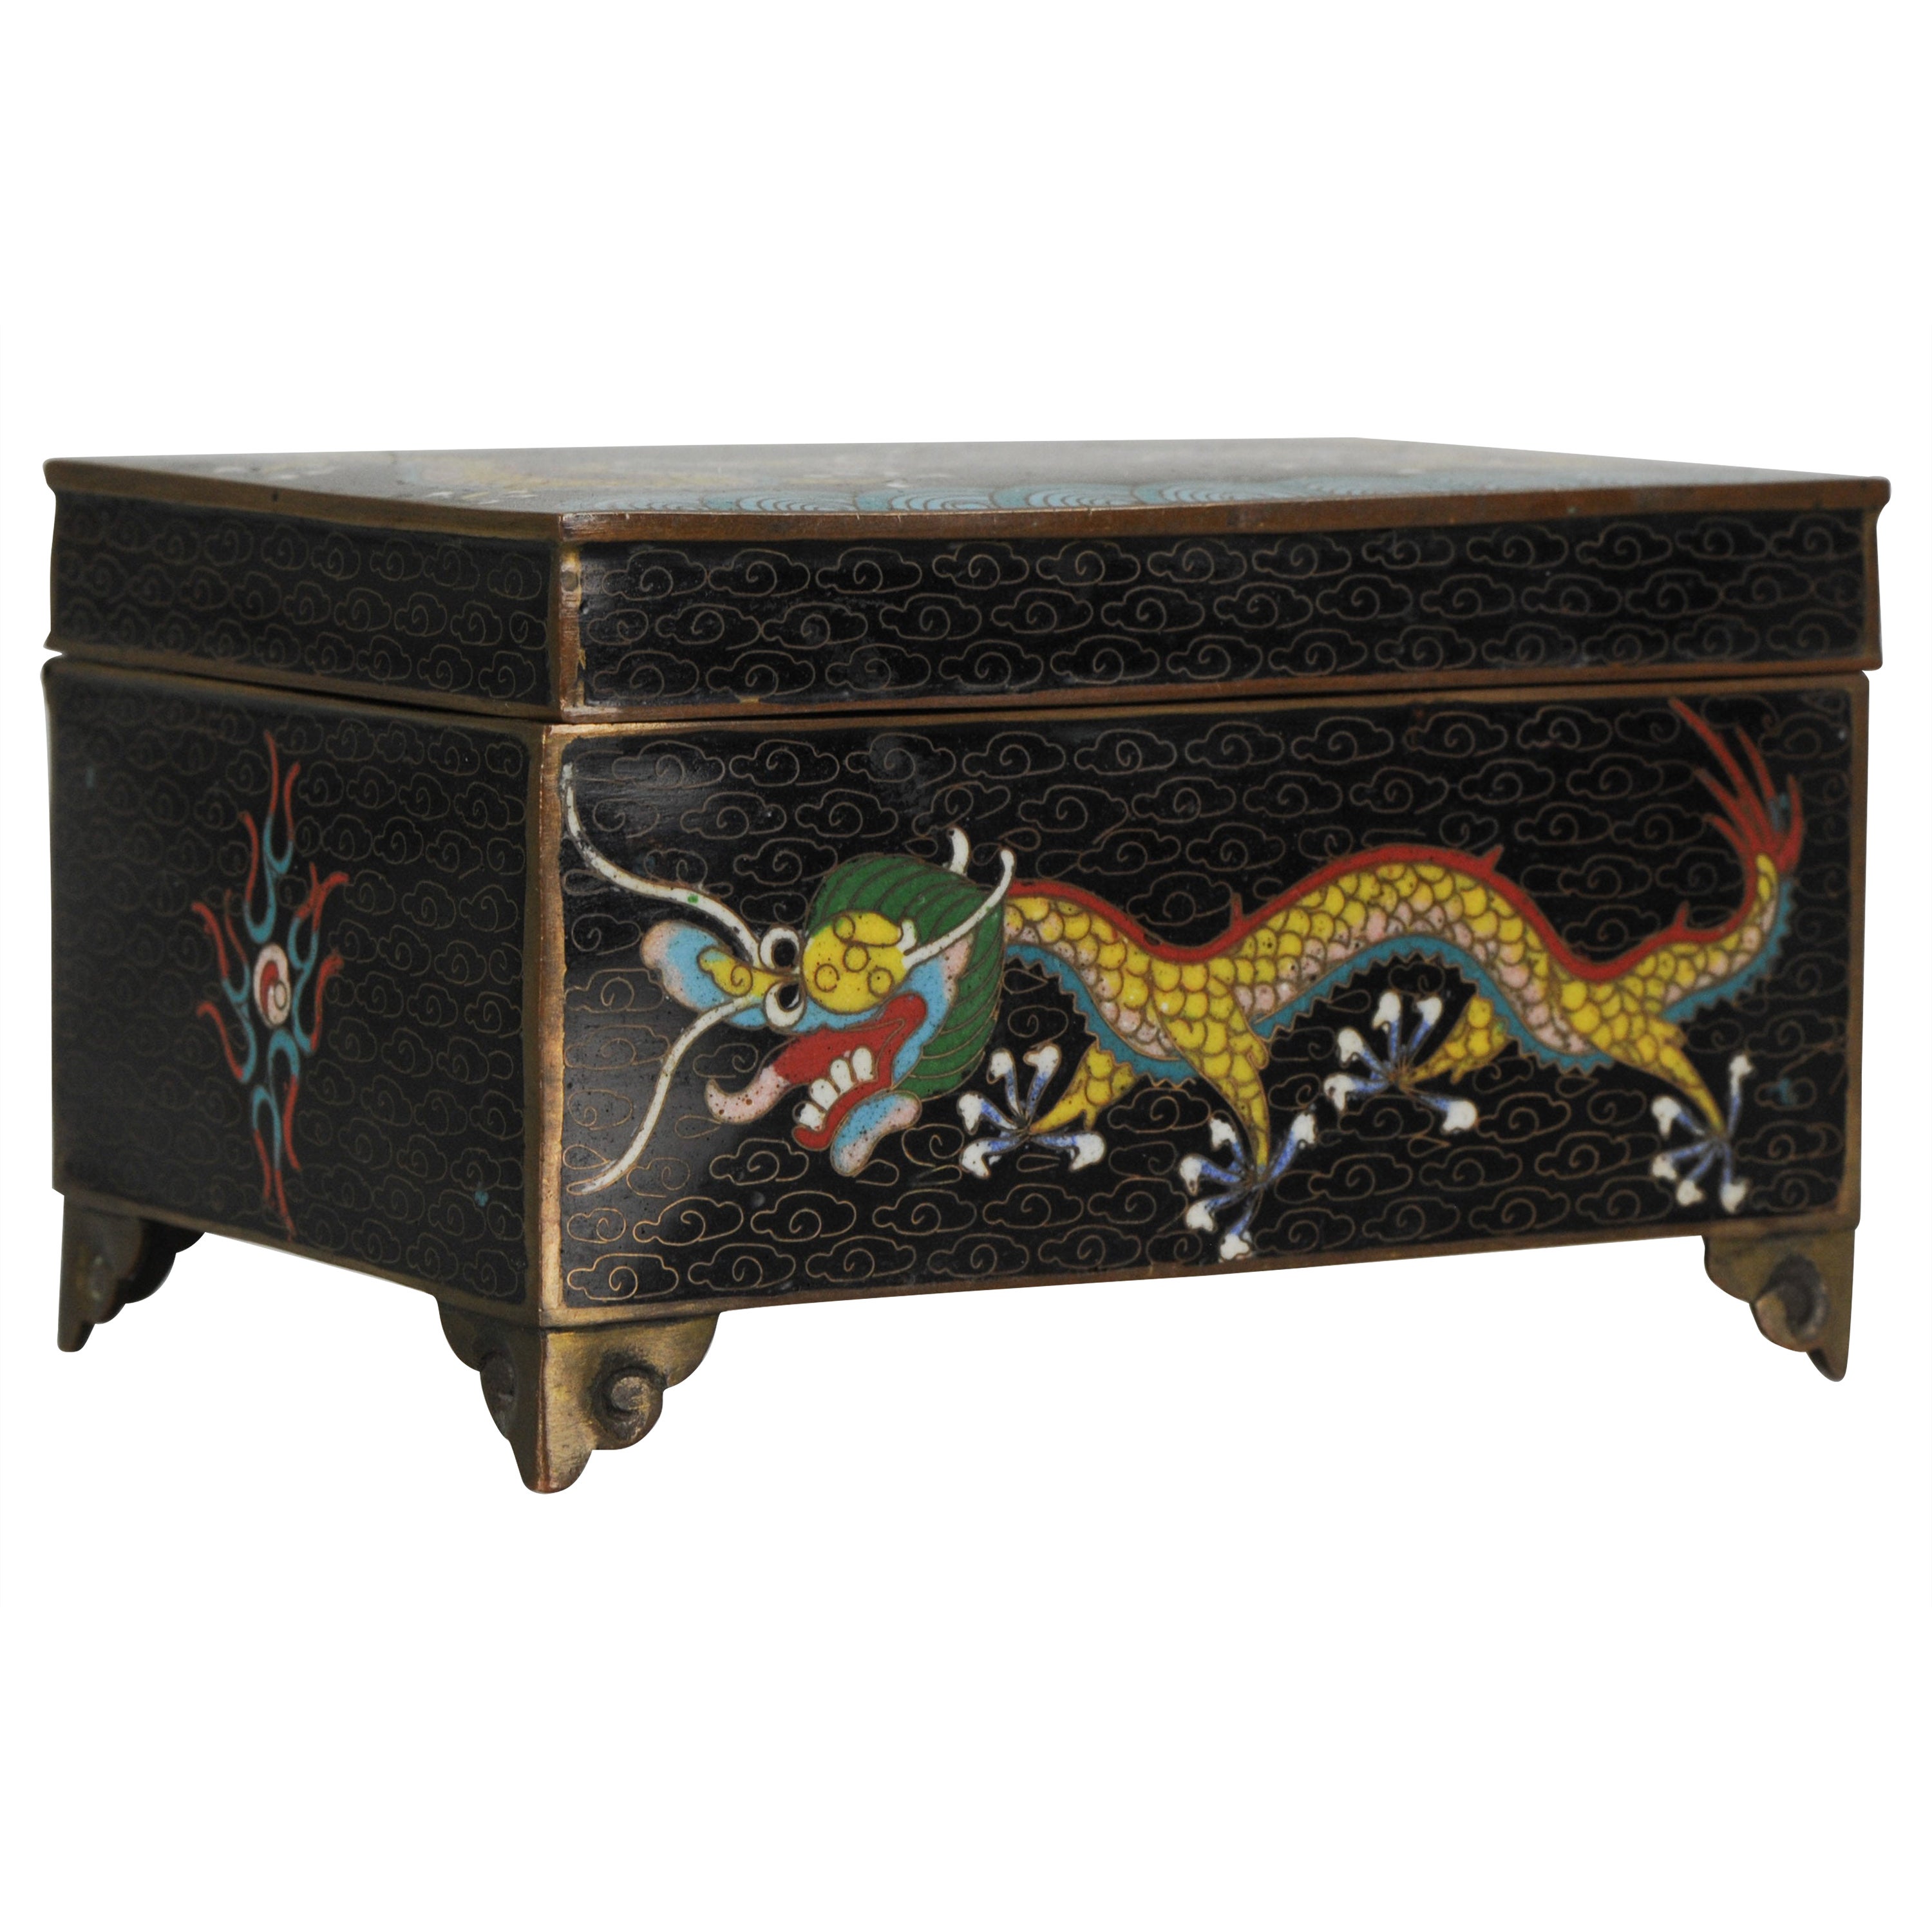 Top Antique Bronze / Copper Cloisonné Dragon Box China, 19th Century For Sale